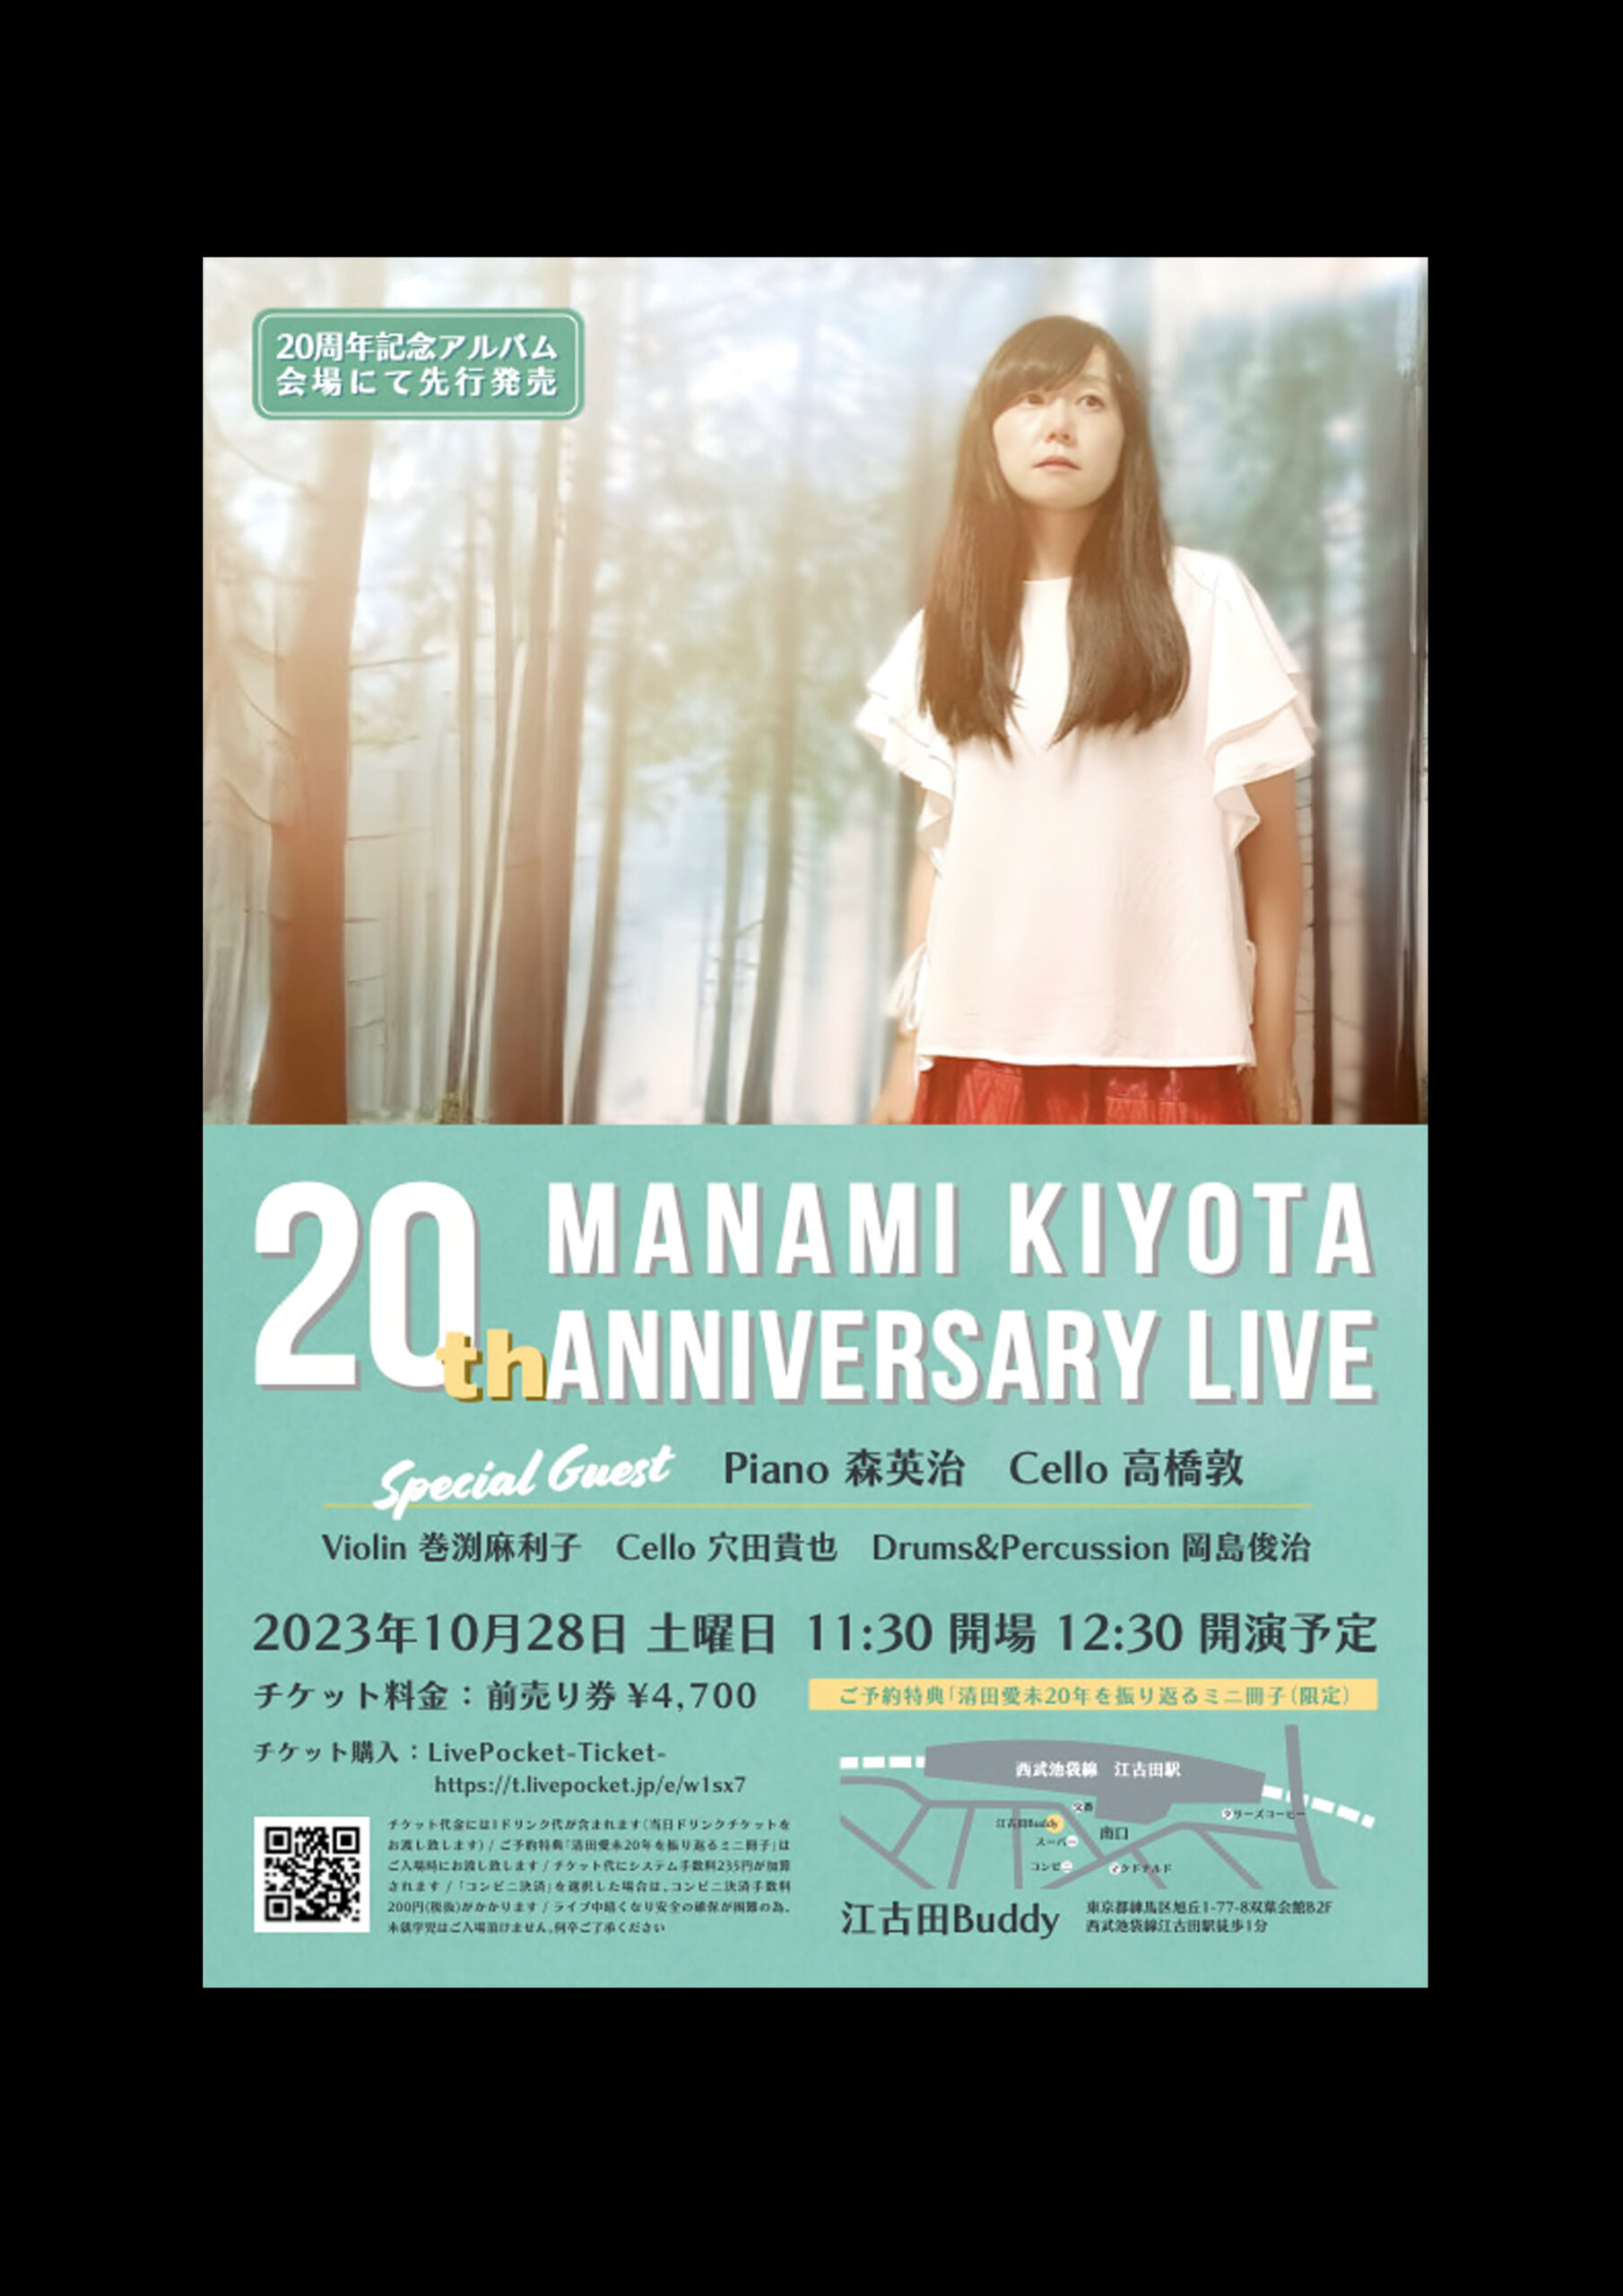 貸切ライブ】Manami Kiyota 20th Anniversary Live | Live in BUDDY